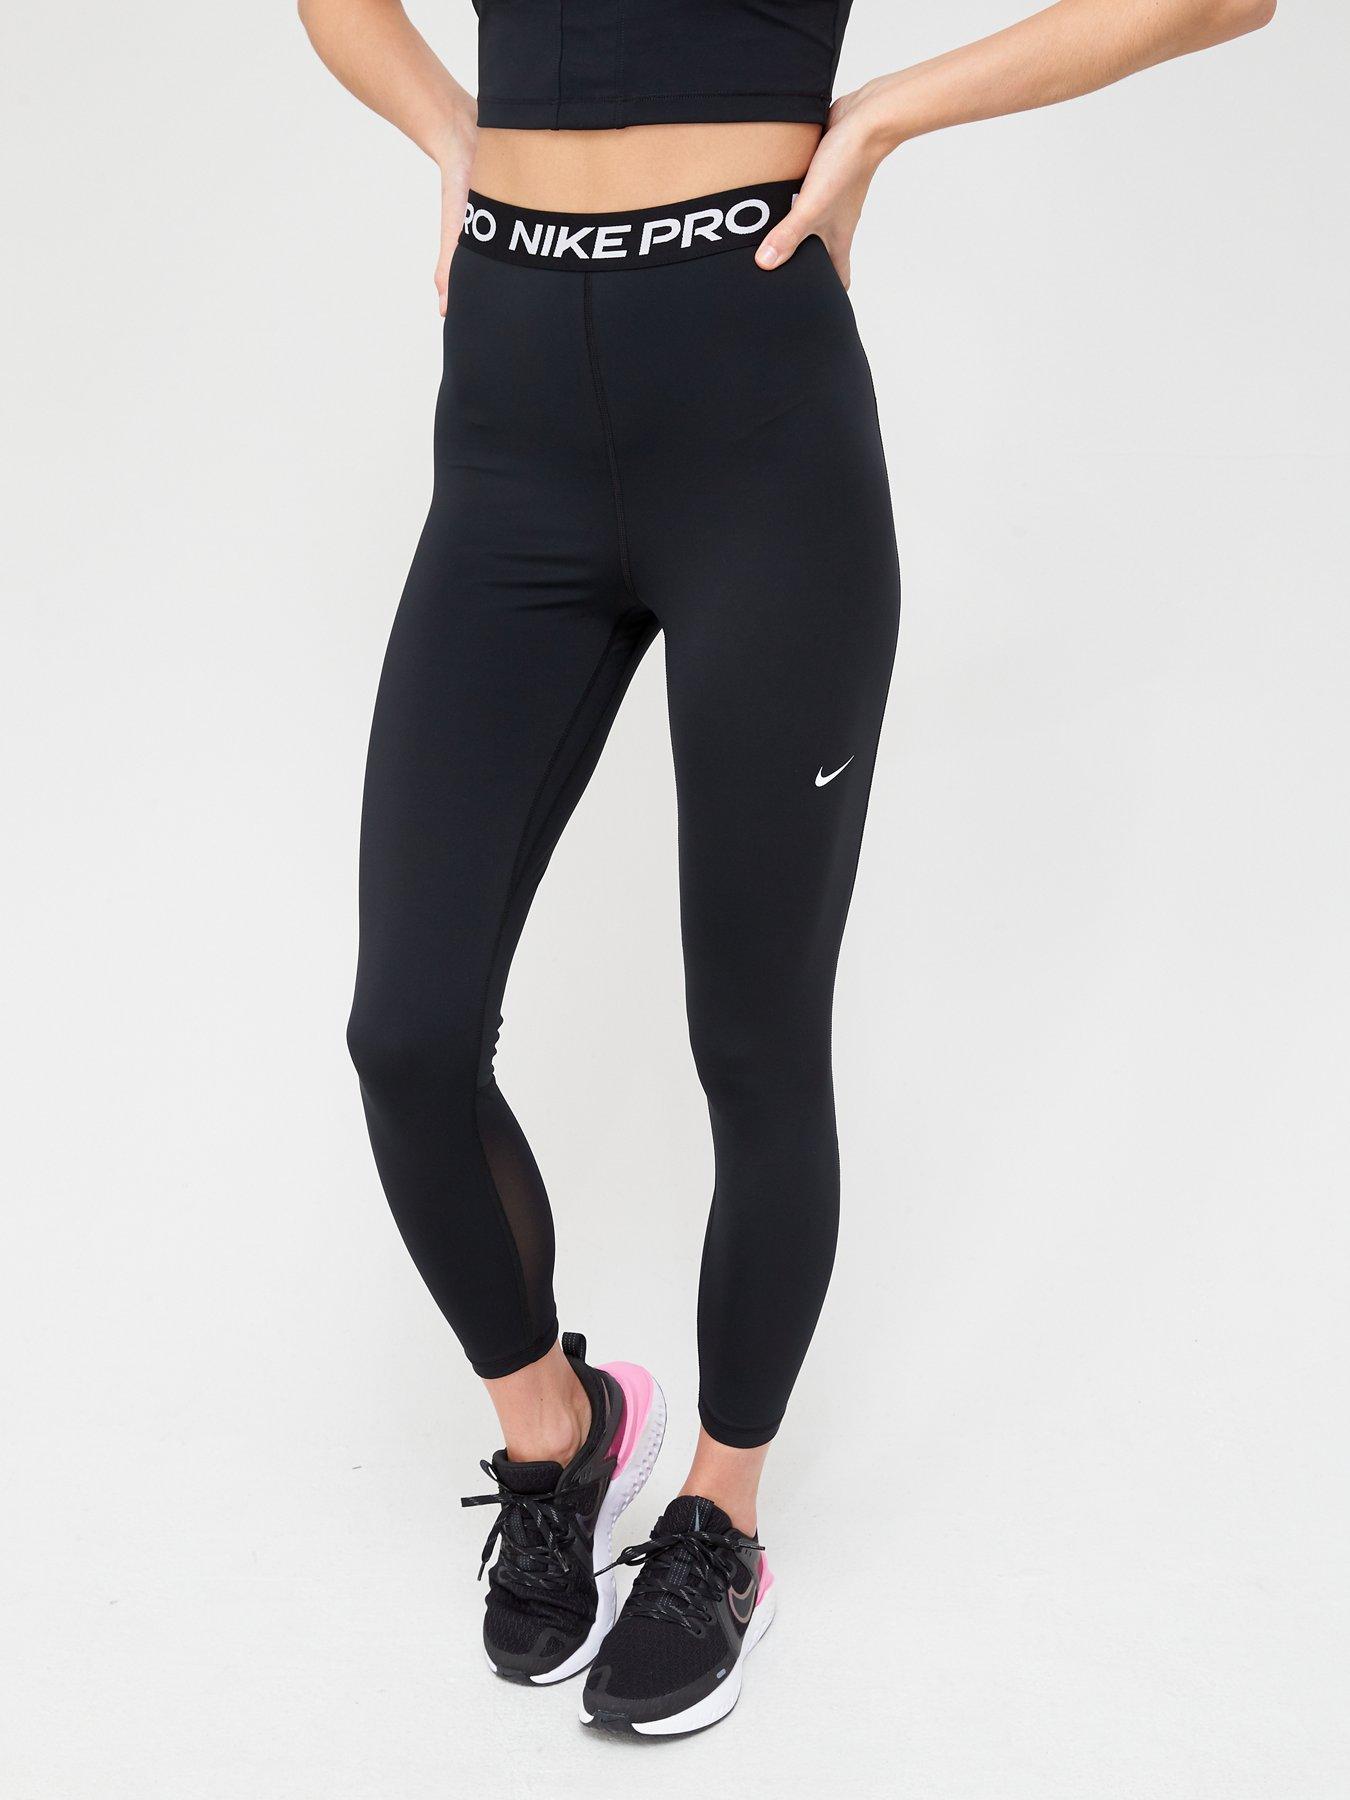 Nike Womens Animal Print Swoosh Leggings - Black | Nike sportswear women,  Nike sportswear, Animal print leggings